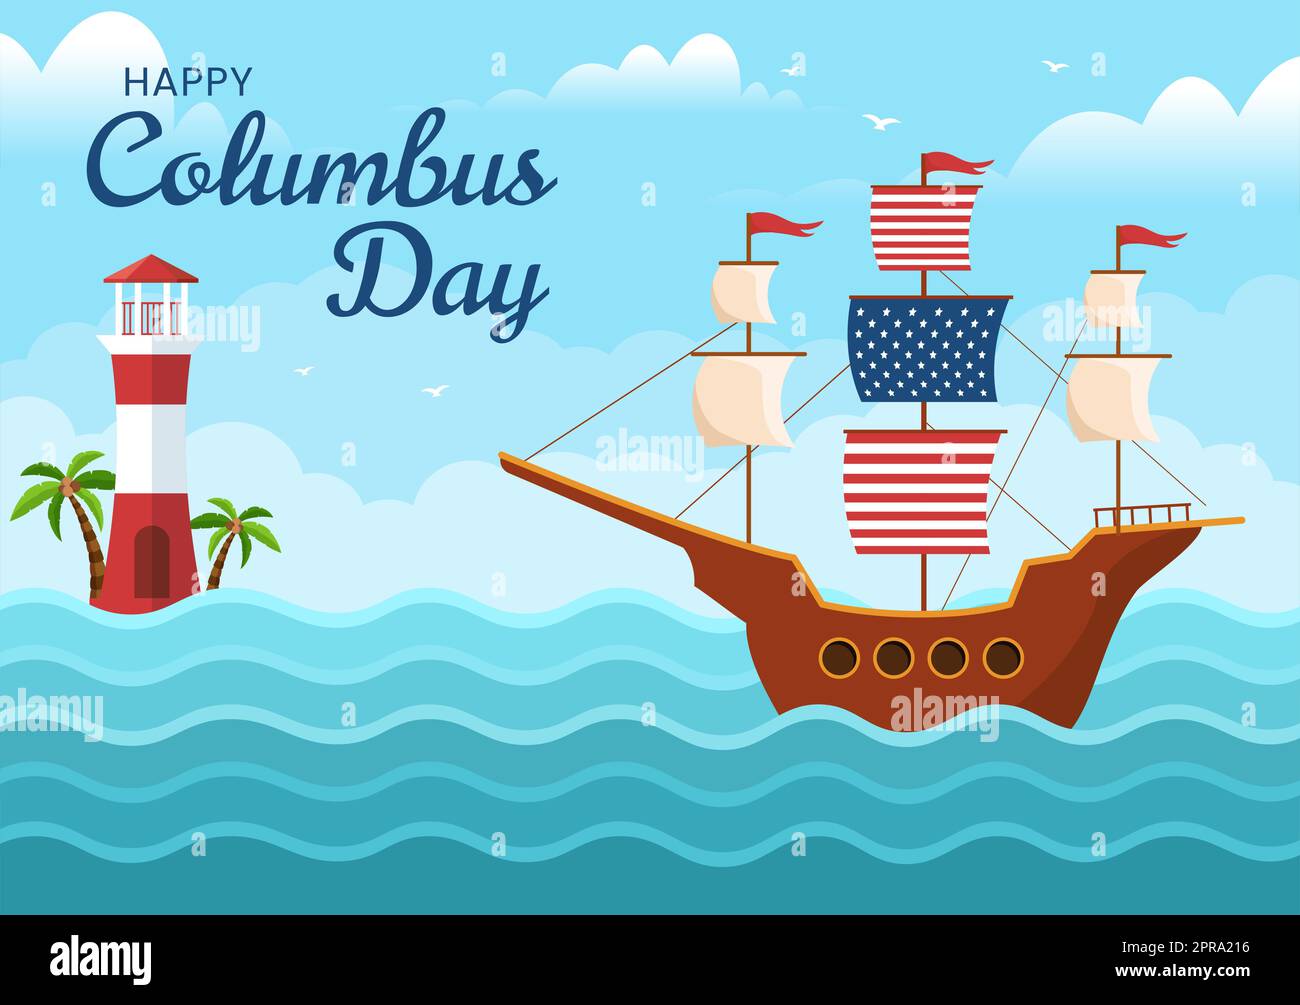 Happy Columbus Day National Holiday Handgezeichnete Cartoon Illustration mit blauen Wellen, Kompass, Schiff und USA Flaggen im flachen Stil Hintergrund Stockfoto